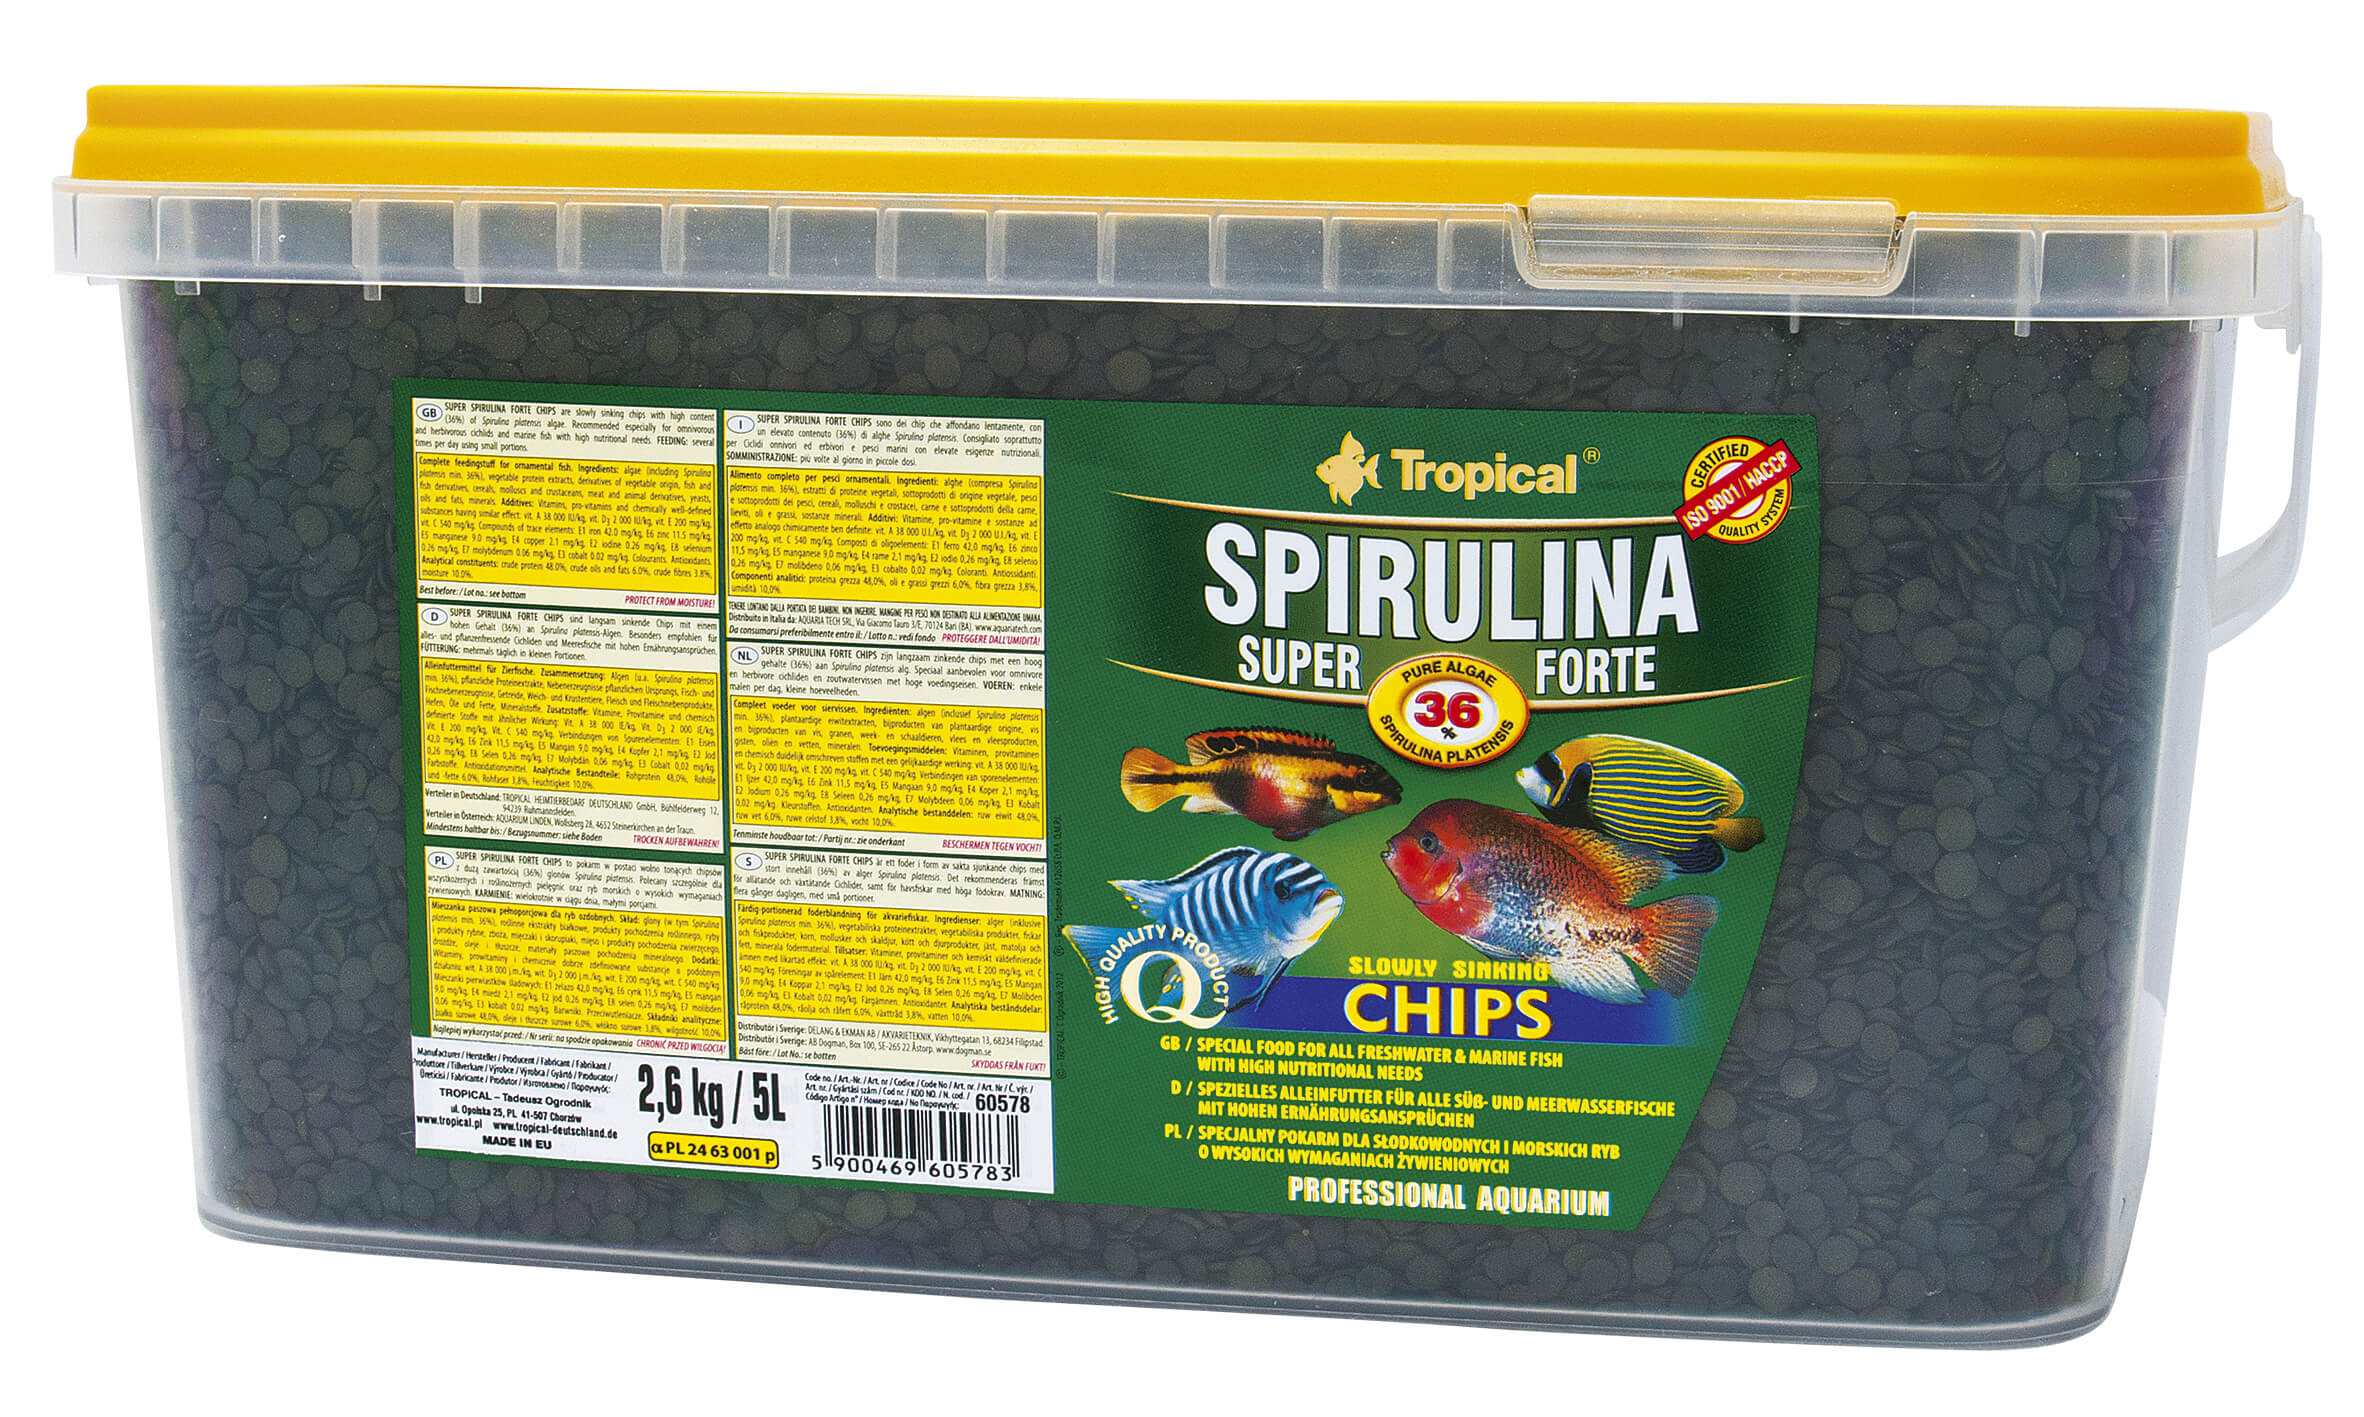 Super Spirulina Forte (36%) Chips